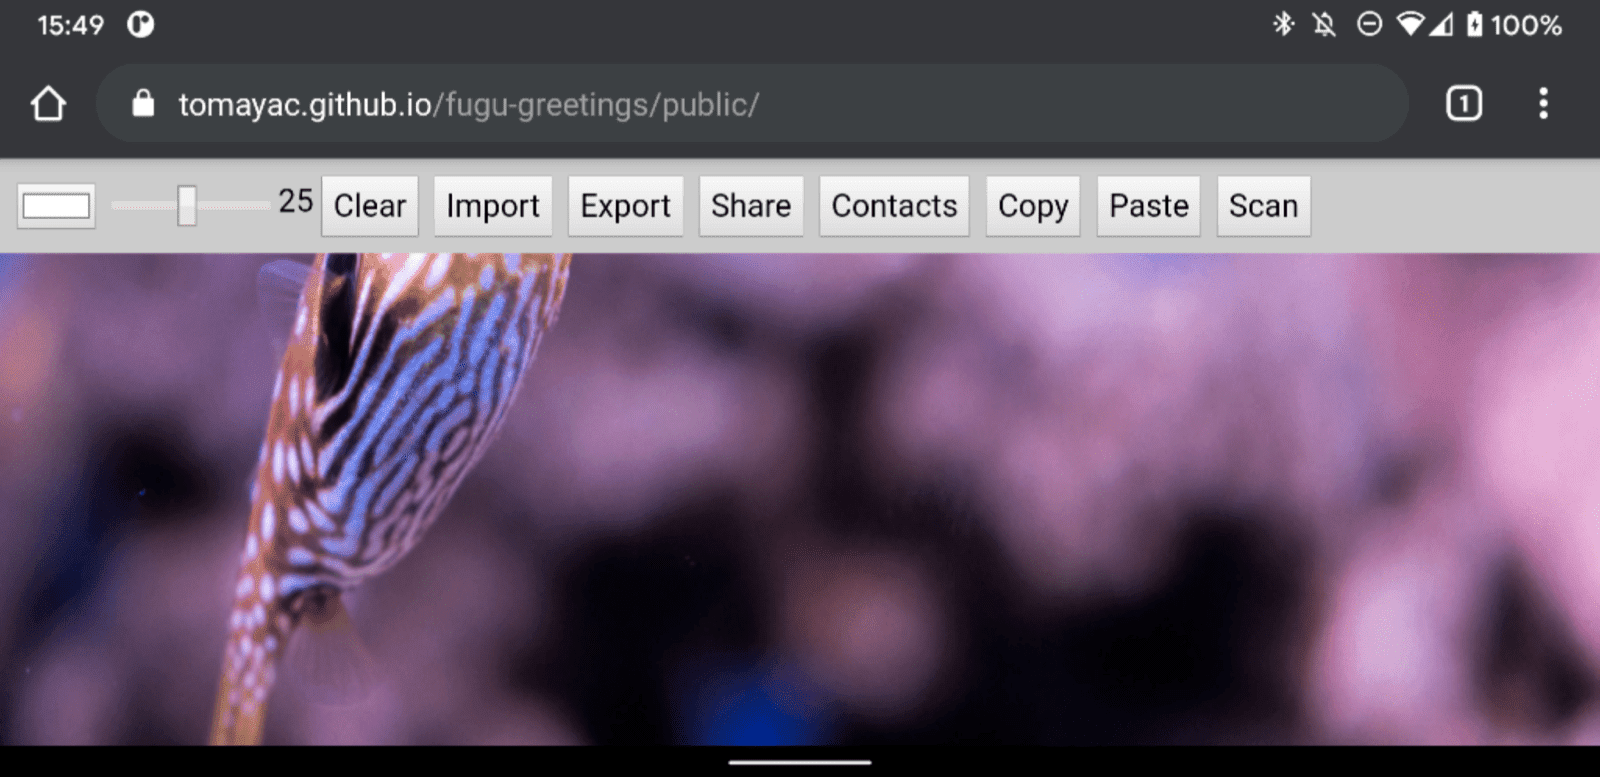 Fugu Greetings em execução no Android Chrome, mostrando muitos recursos disponíveis.